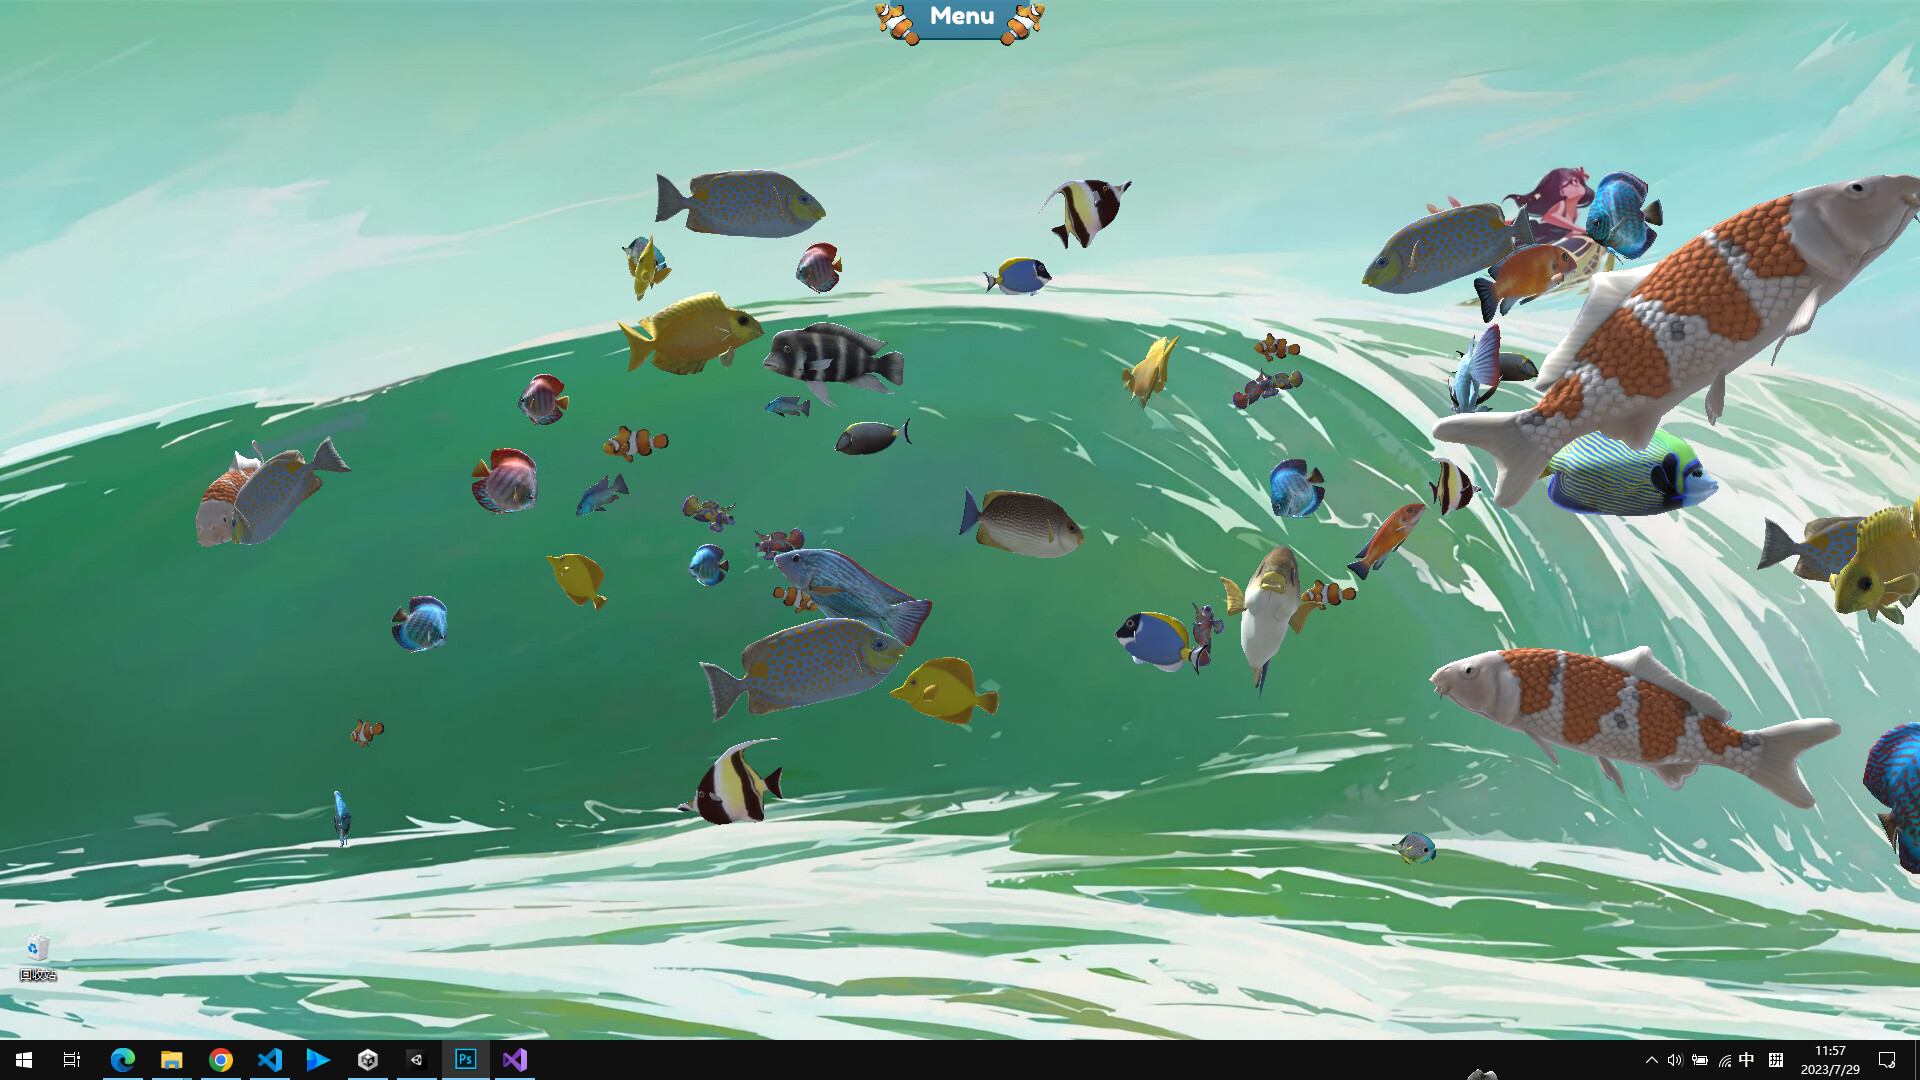 桌面養魚摸魚利器《Fish on the desktop》STEAM頁上線